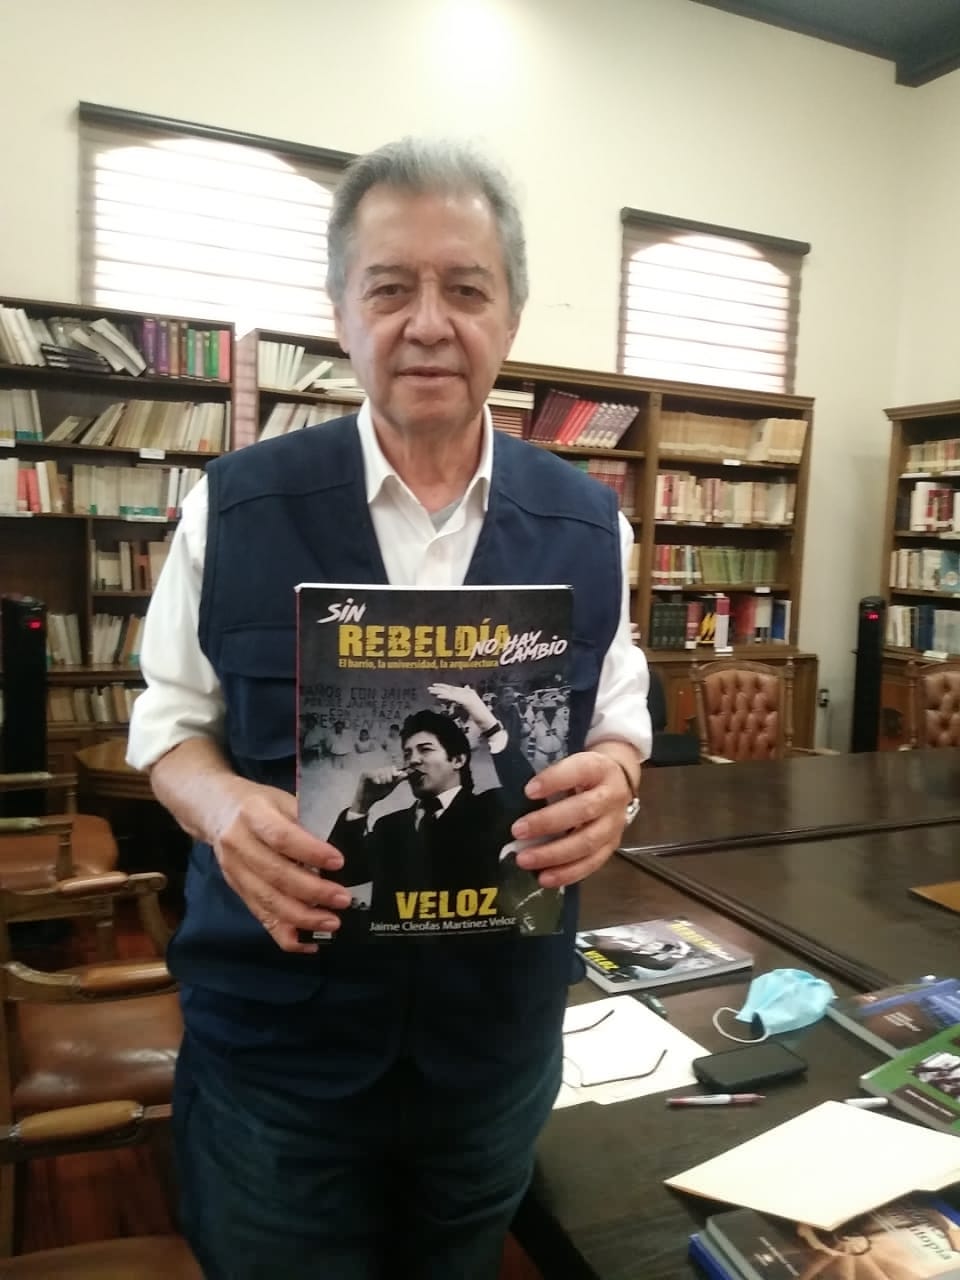 Dona Martínez Veloz libros de su autoría a Biblioteca del Congreso